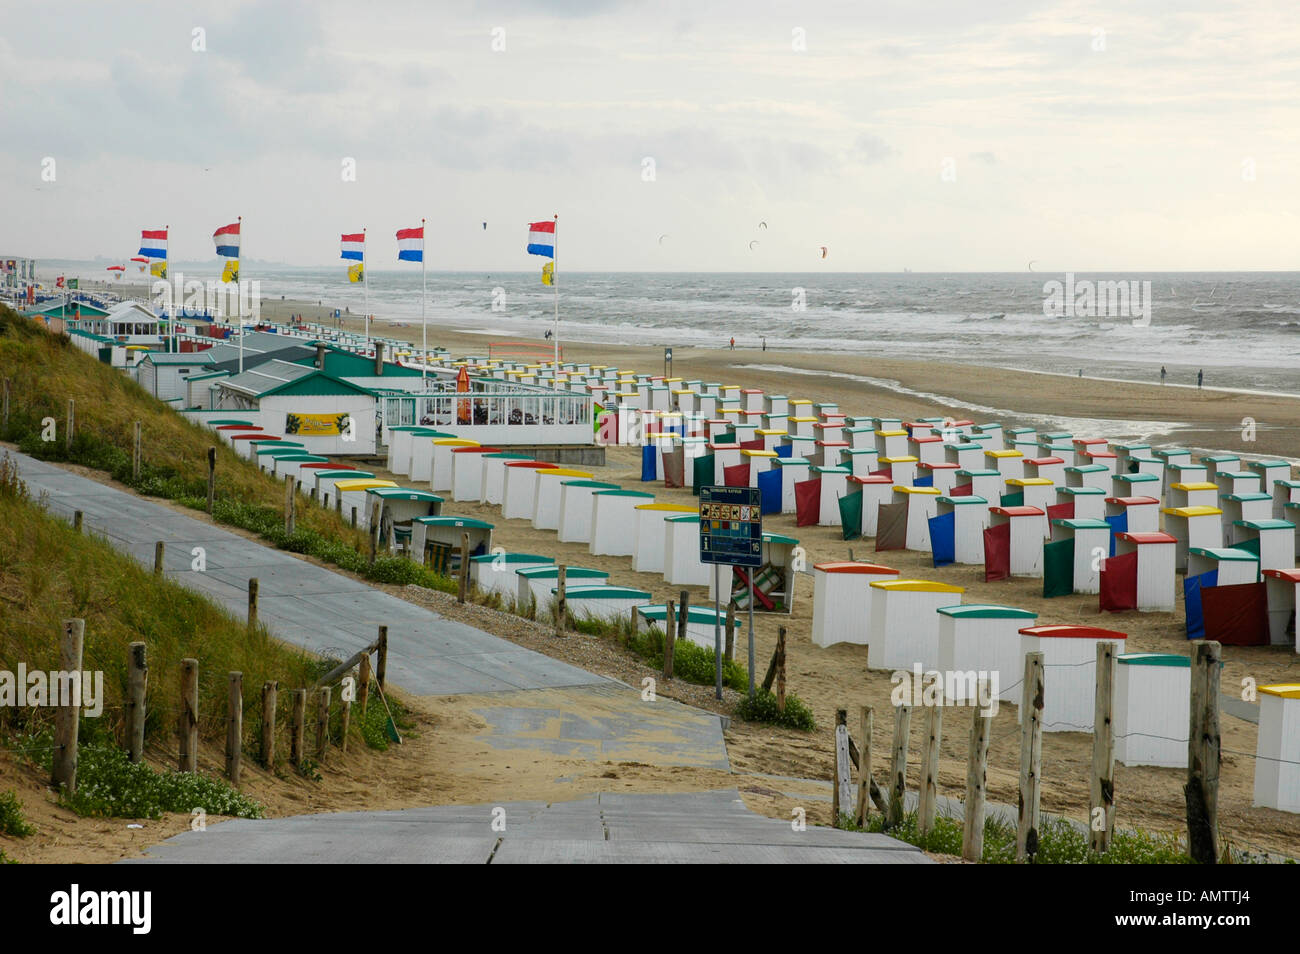 Chaises de plage et de beach café avec pavillon néerlandais, Katwijk aan Zee, Pays-Bas du Sud, Hollande, Pays-Bas Banque D'Images